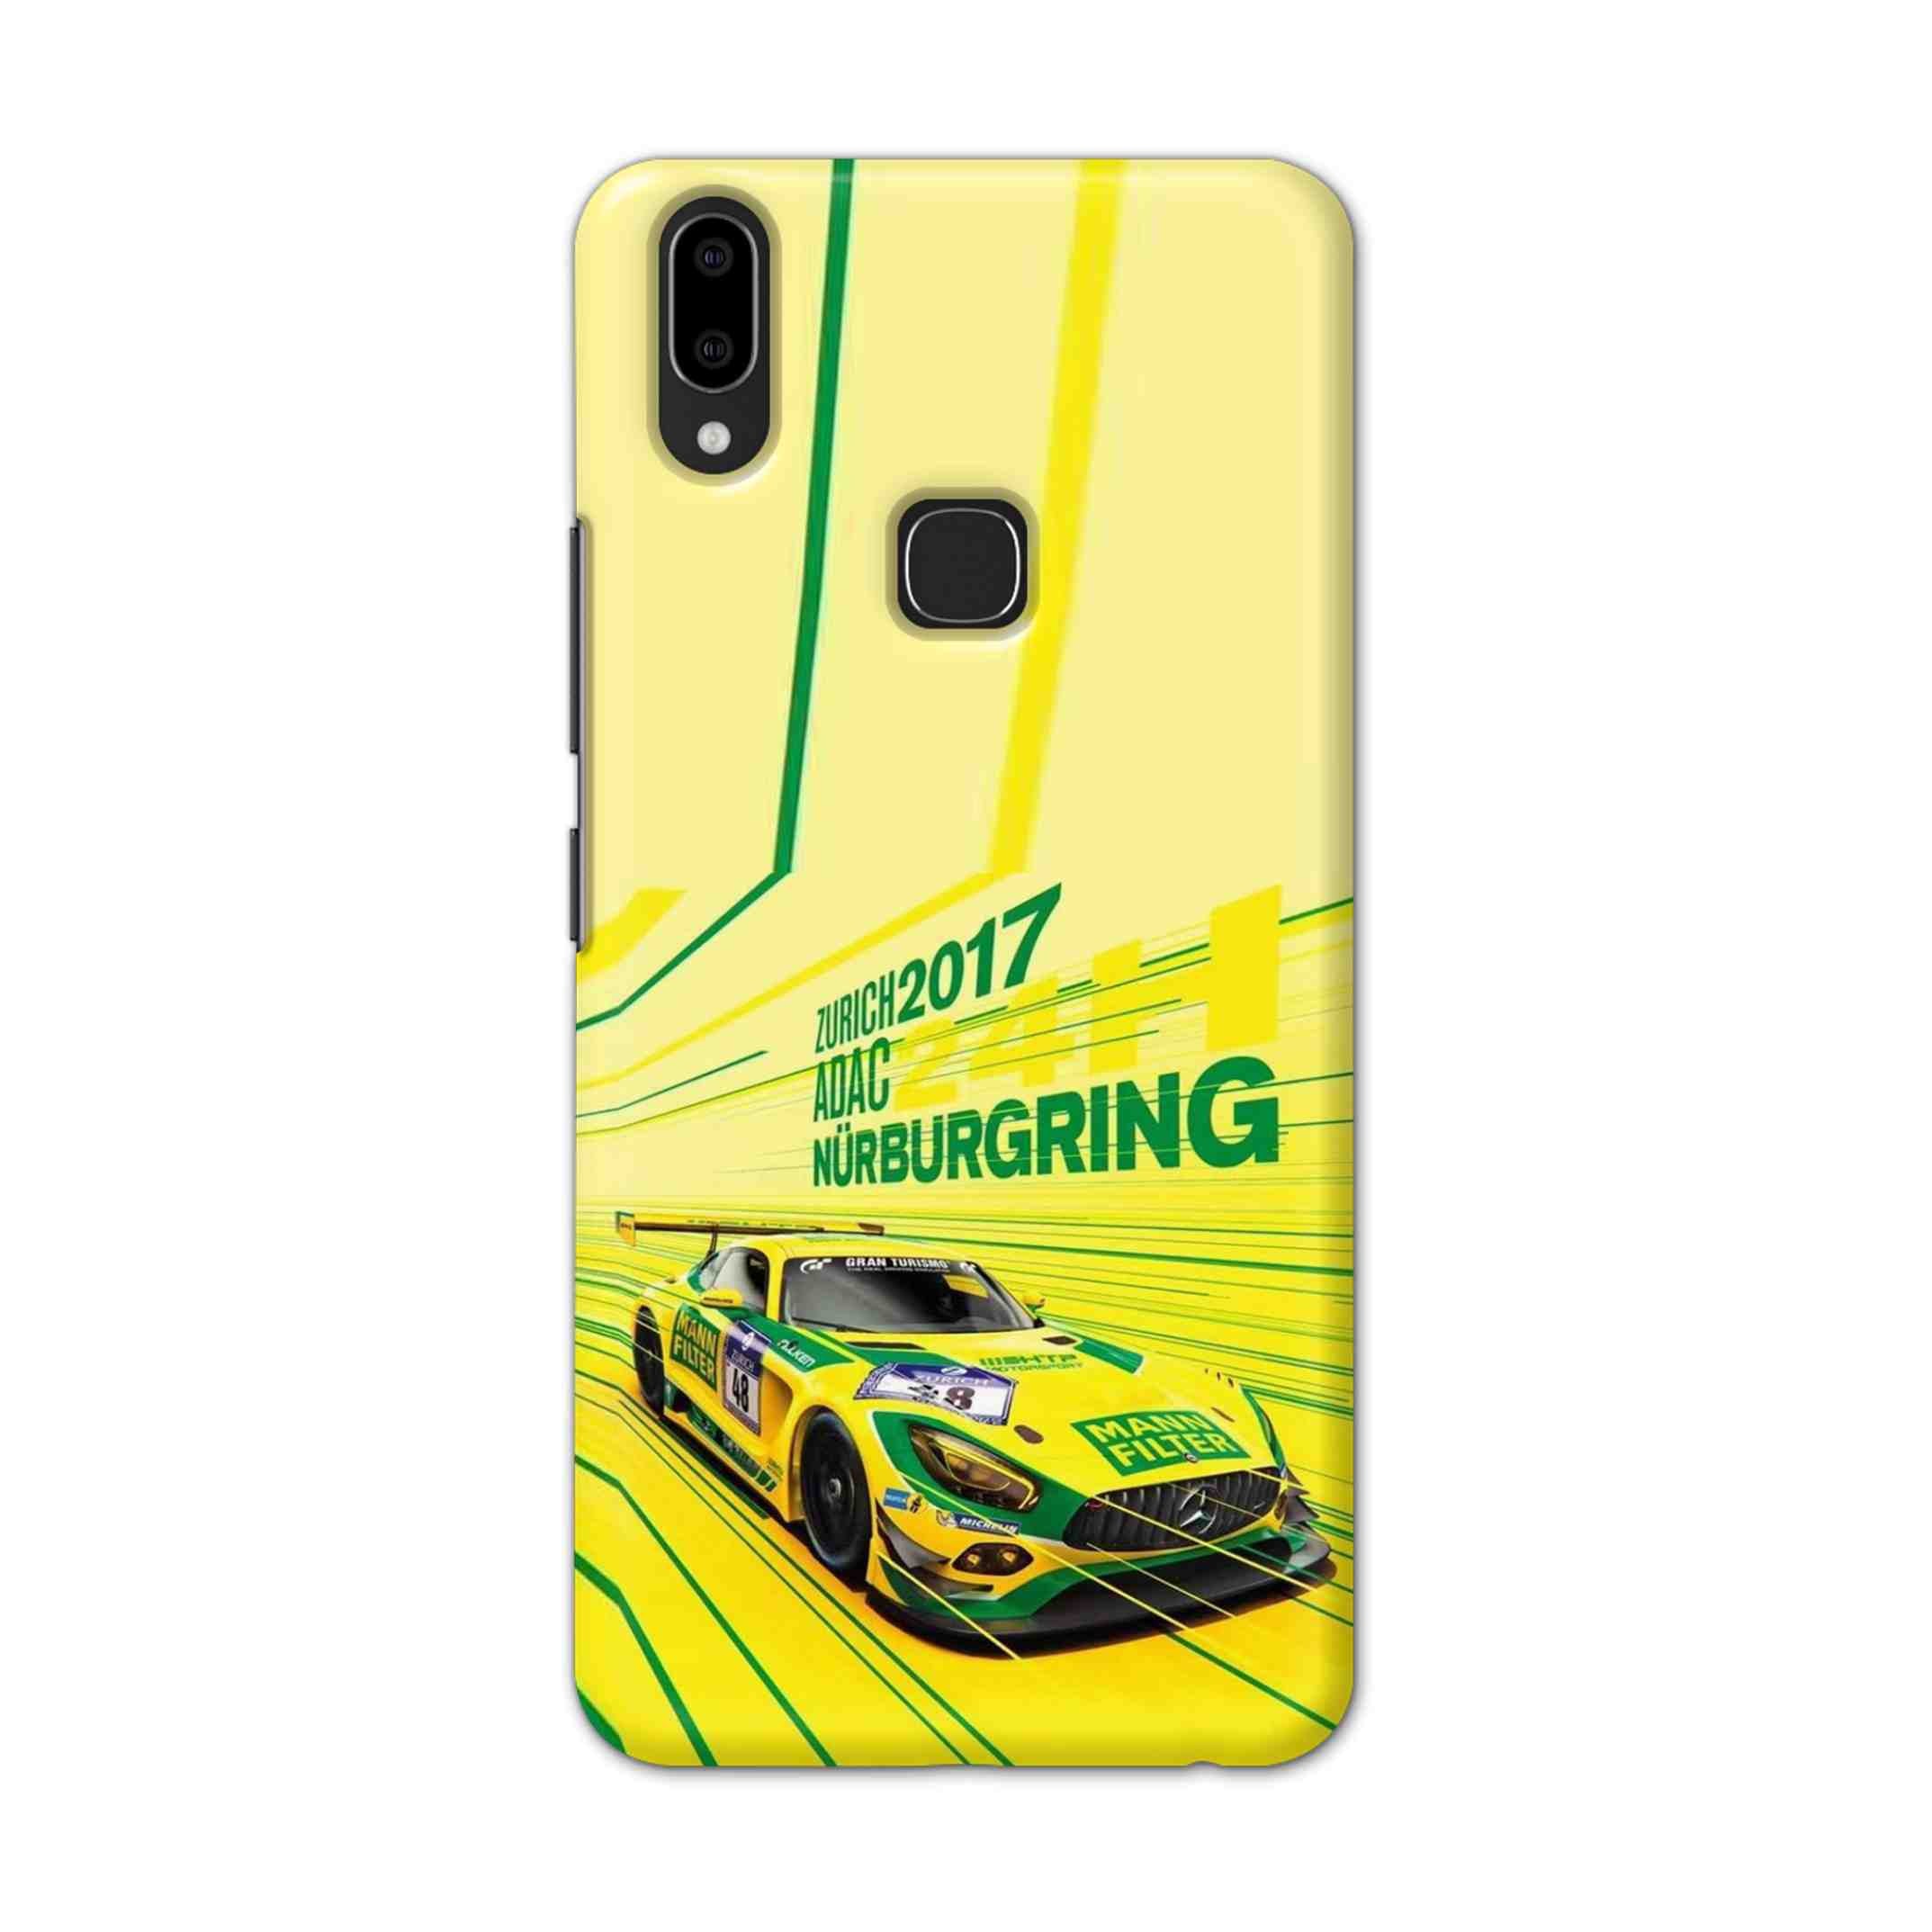 Buy Drift Racing Hard Back Mobile Phone Case Cover For Vivo V9 / V9 Youth Online